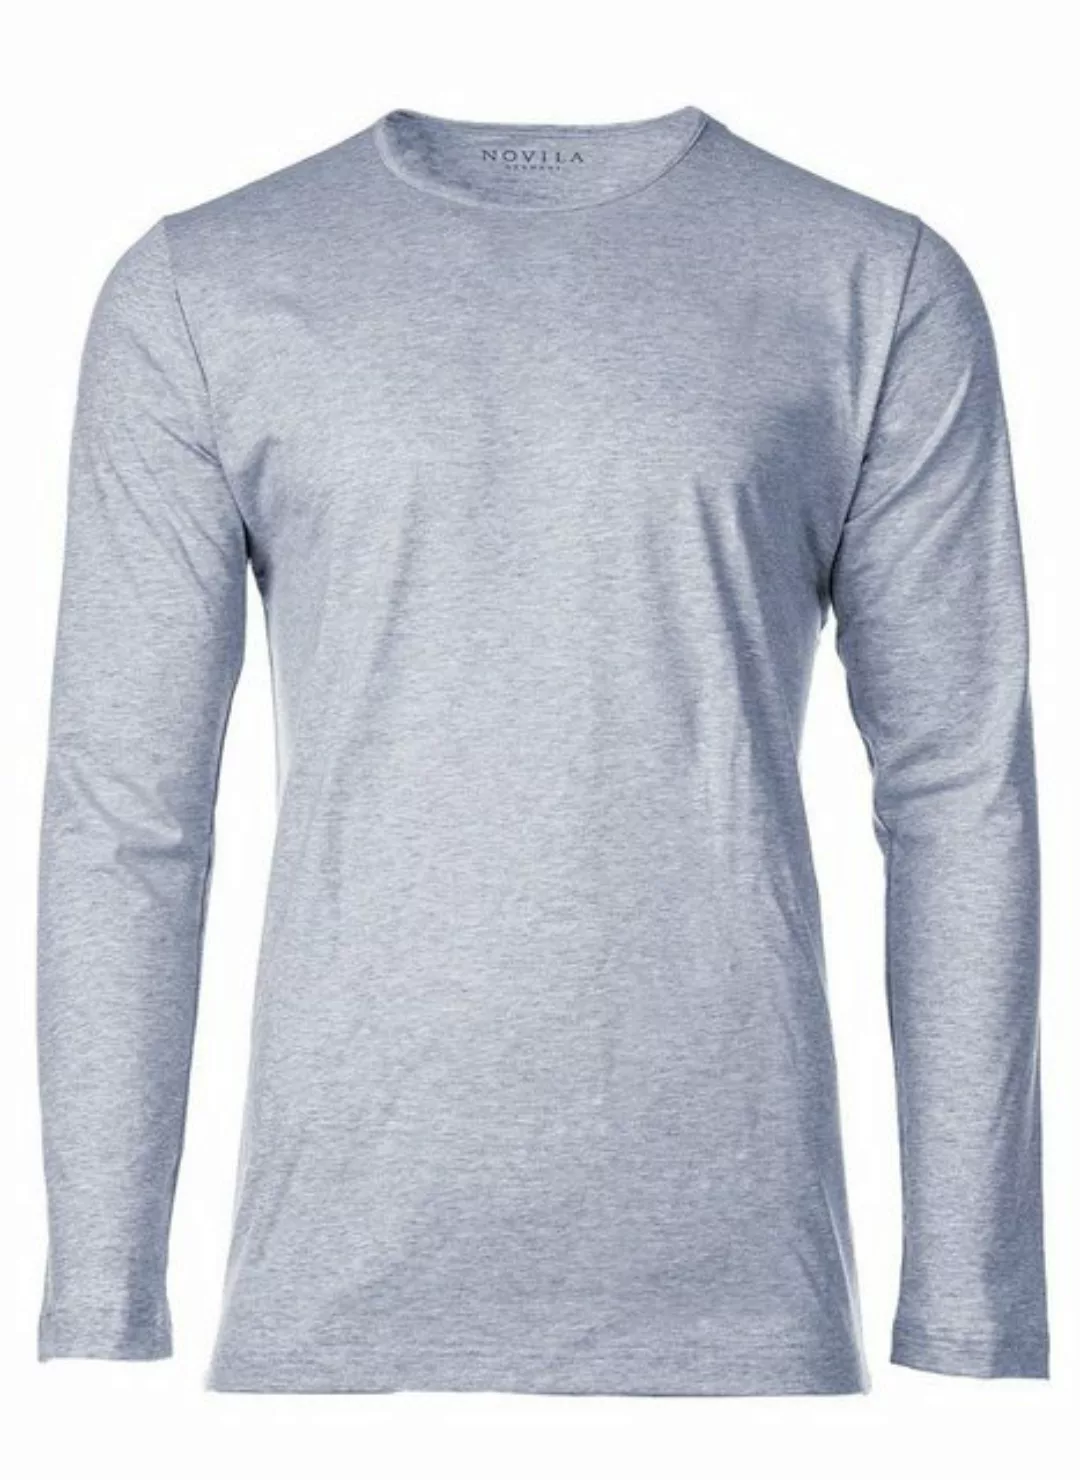 Novila Sweatshirt Herren Shirt, langarm - Loungewear, Rundhals, 1/1 günstig online kaufen